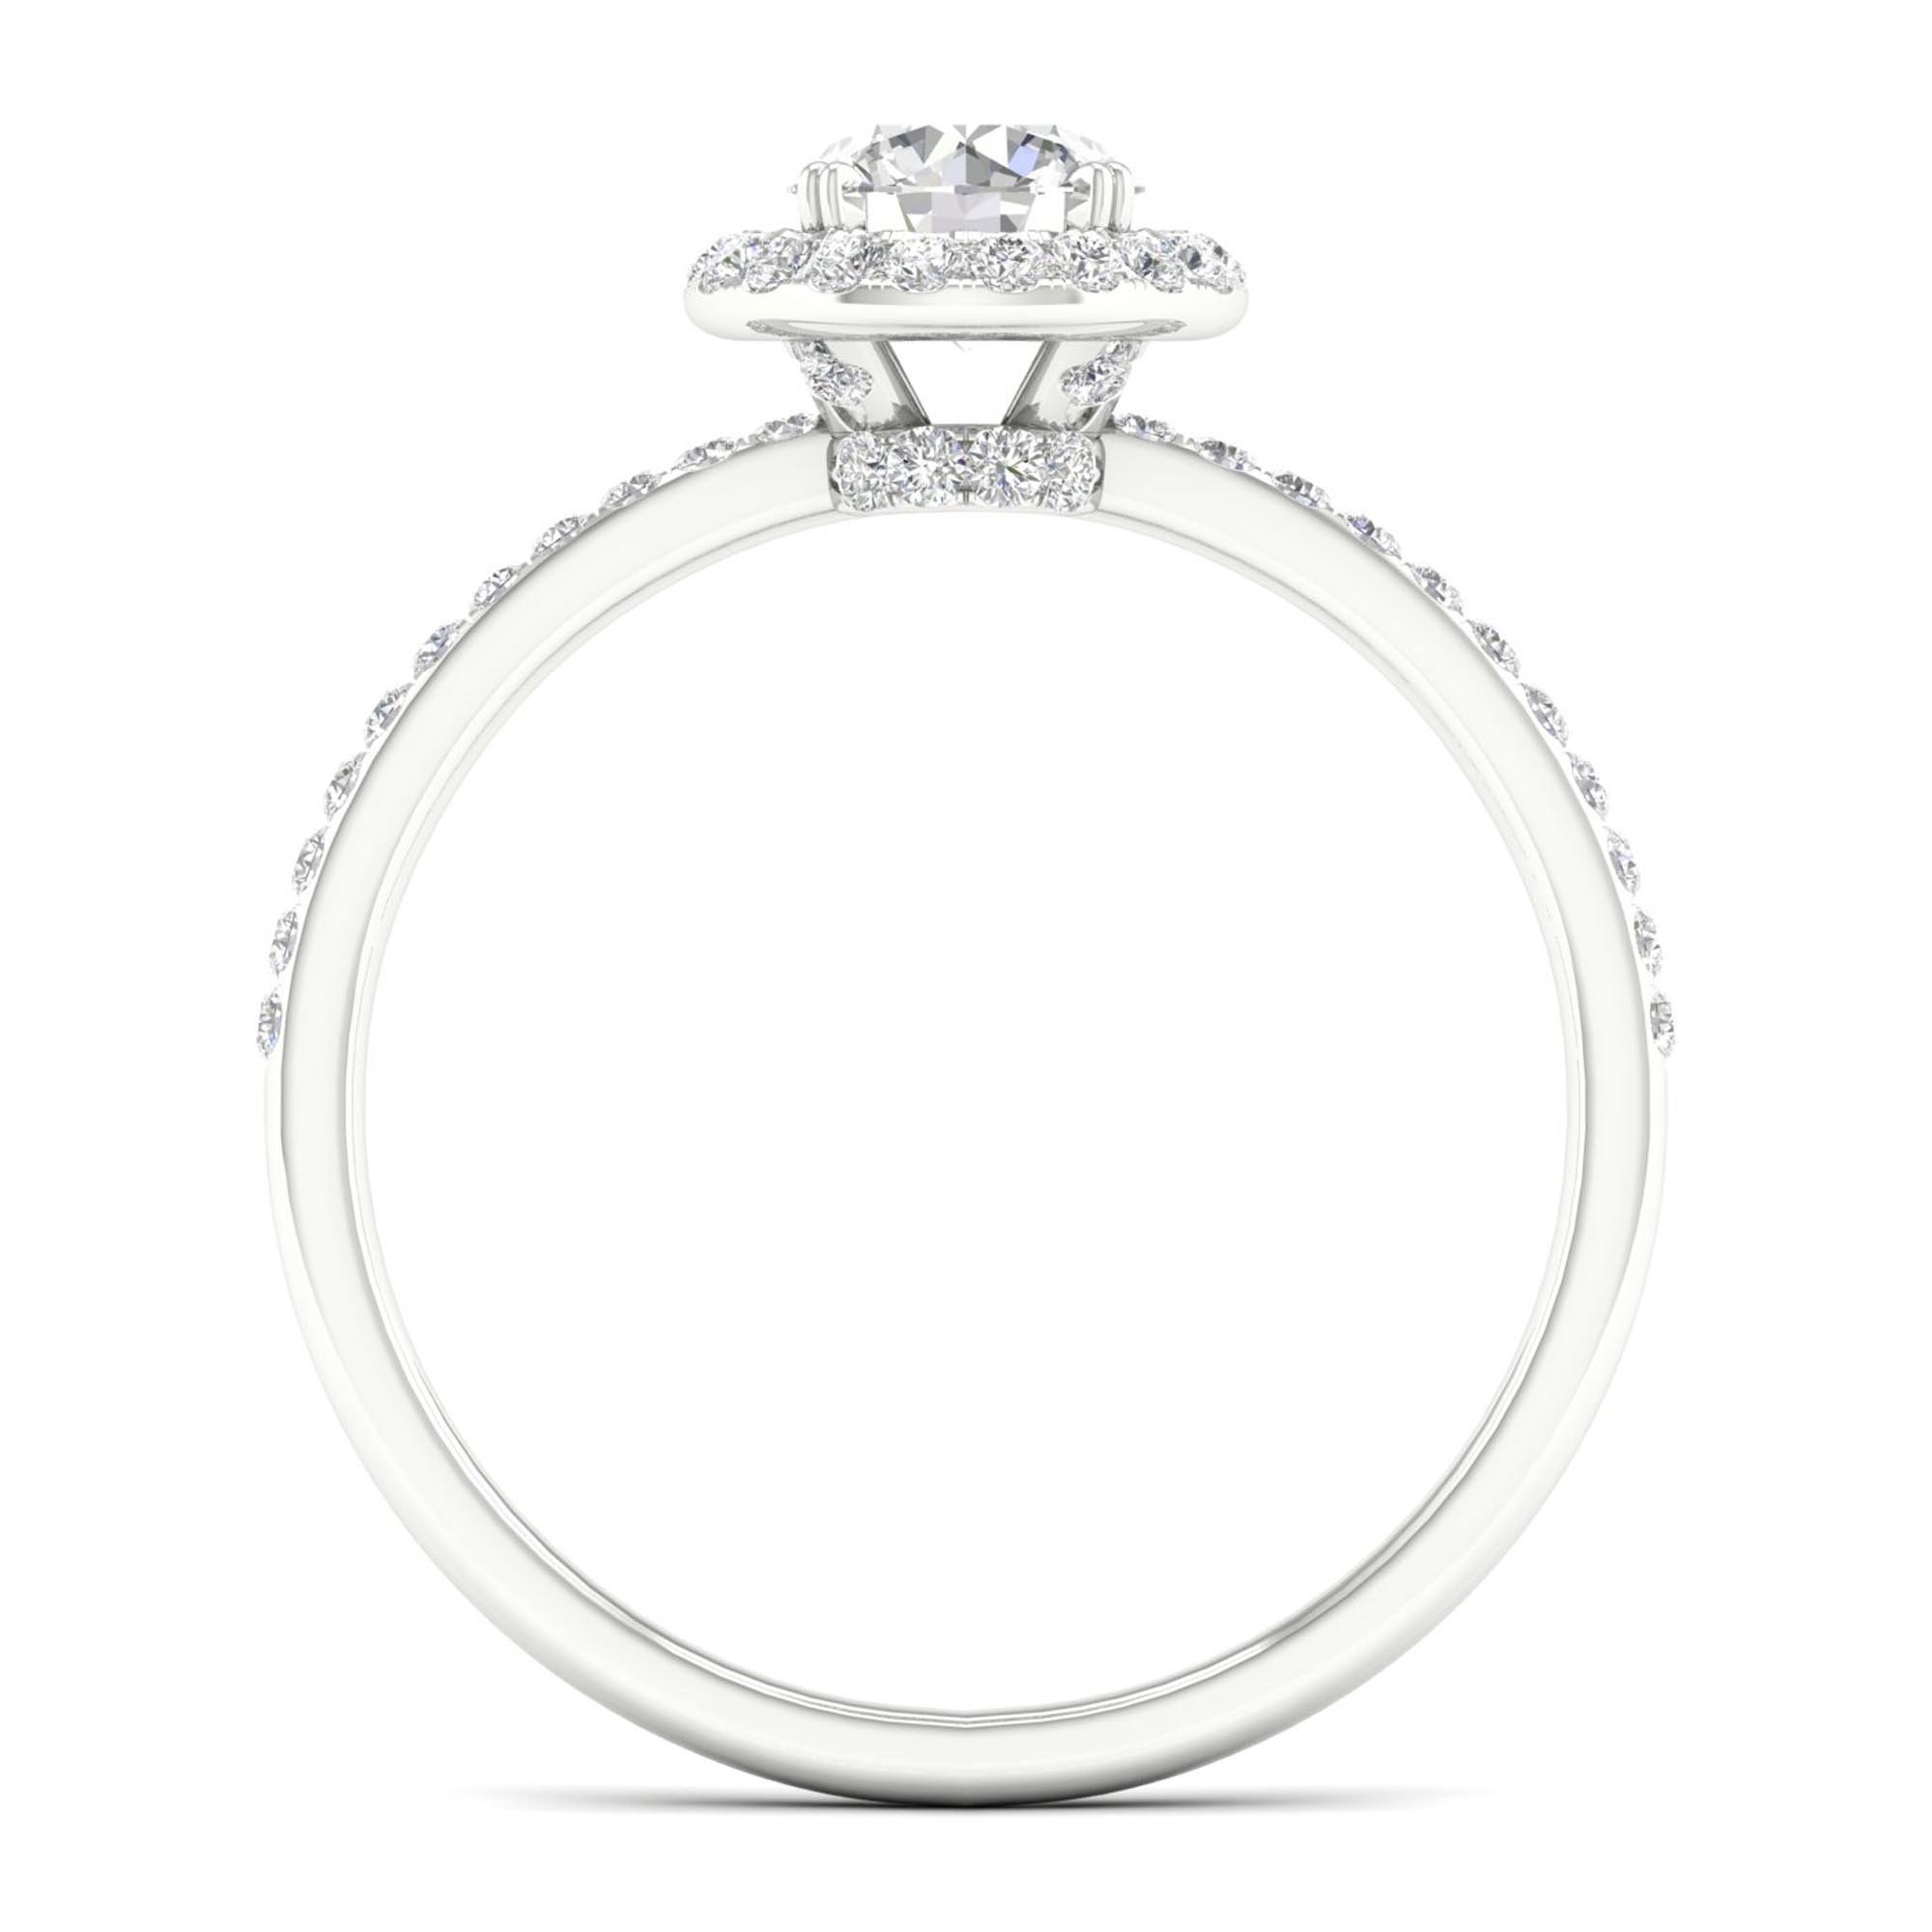 10k Gold 0.80 ct TDW Round Diamond Halo Engagement Ring (I-J | I2)